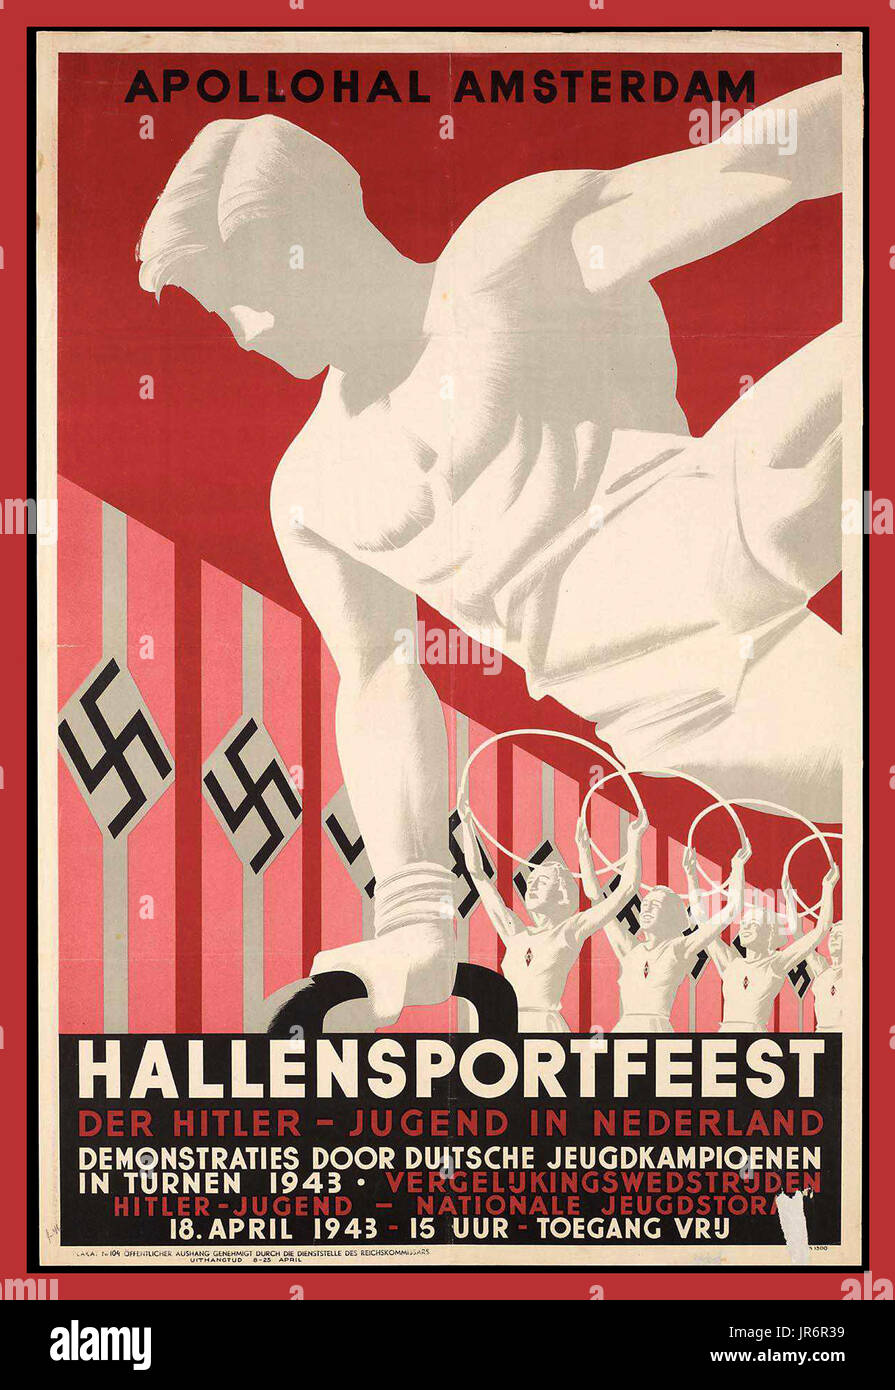 Vintage WW2 Cartel de propaganda nazi 1943 Hallensportfeest. La Juventud Hitler Hitlerjugend Hitler Jugend en los Países Bajos. Cartel de la Alemania nazi. Tarjeta postal del cartel de propaganda del Tercer Reich de la Guerra Mundial 2 Foto de stock